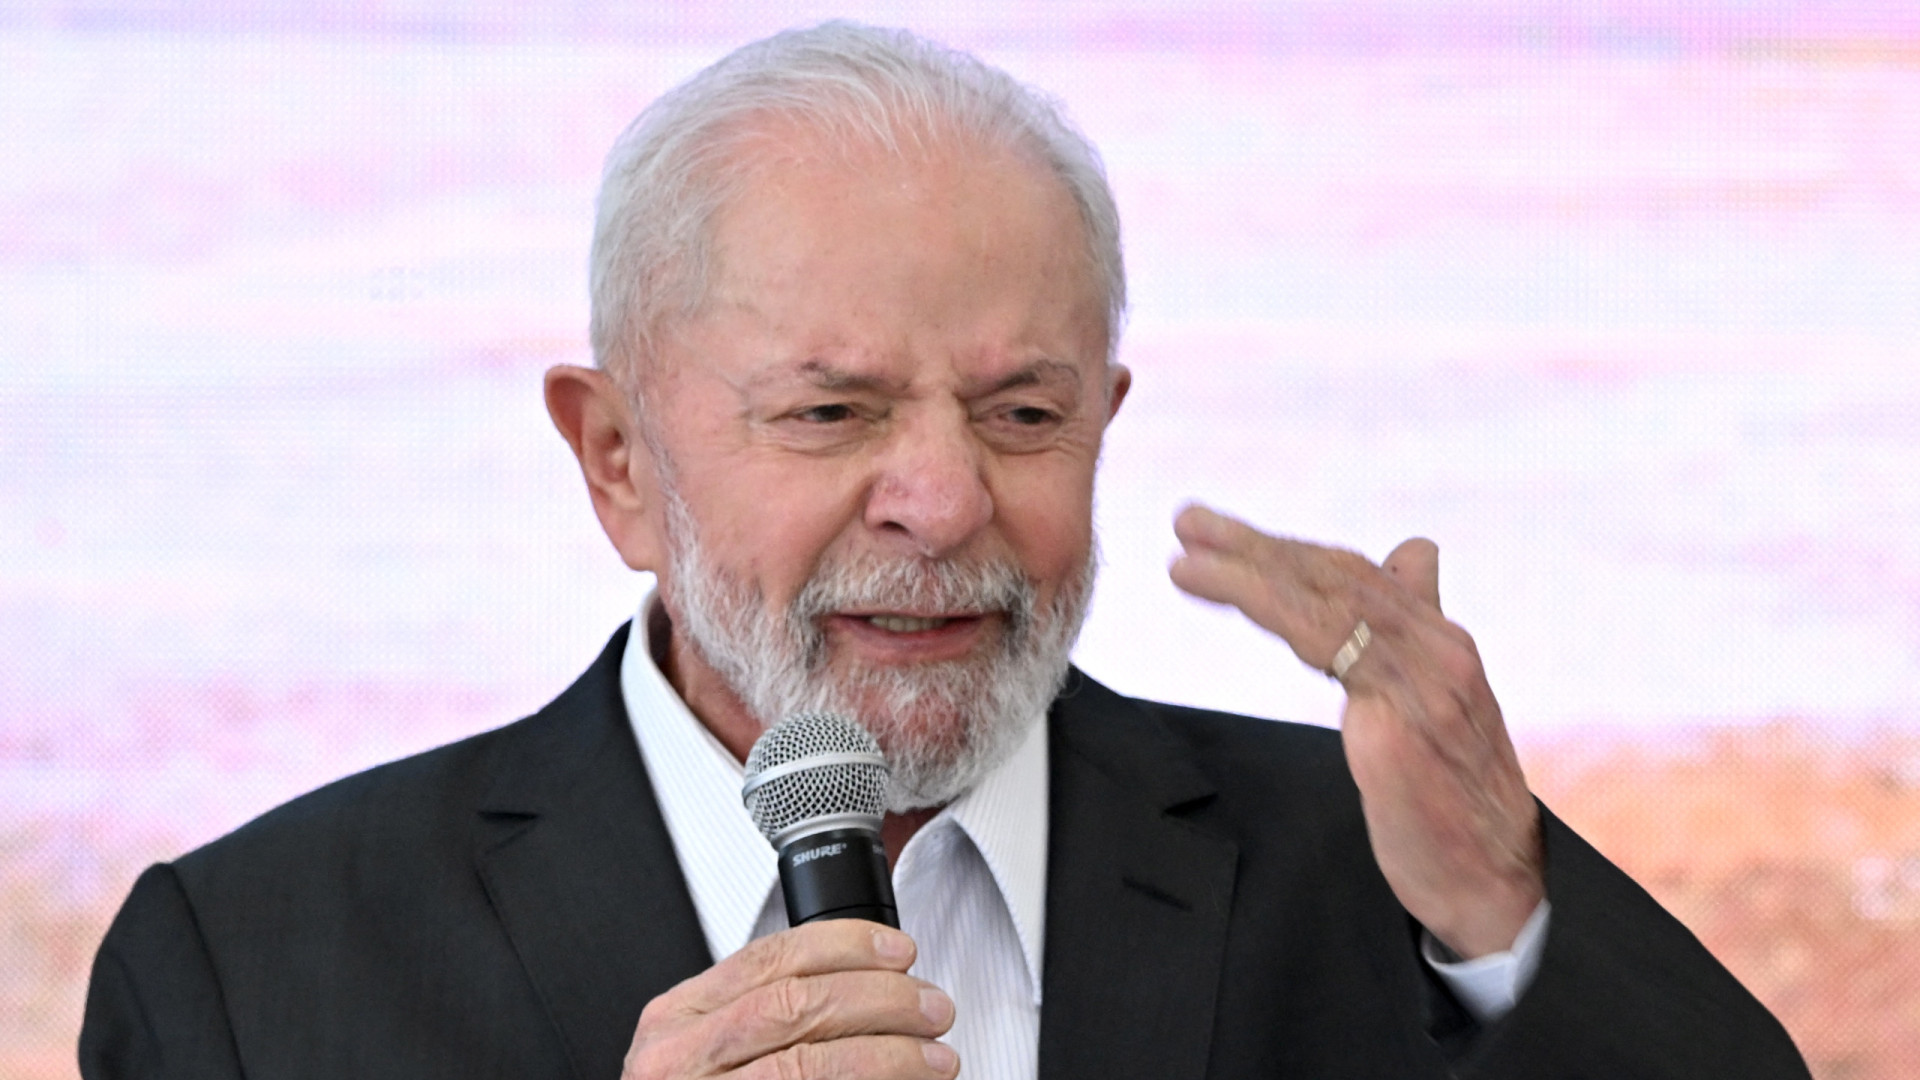 País precisa voltar a produzir carro para o povo brasileiro, não para americanos, diz Lula